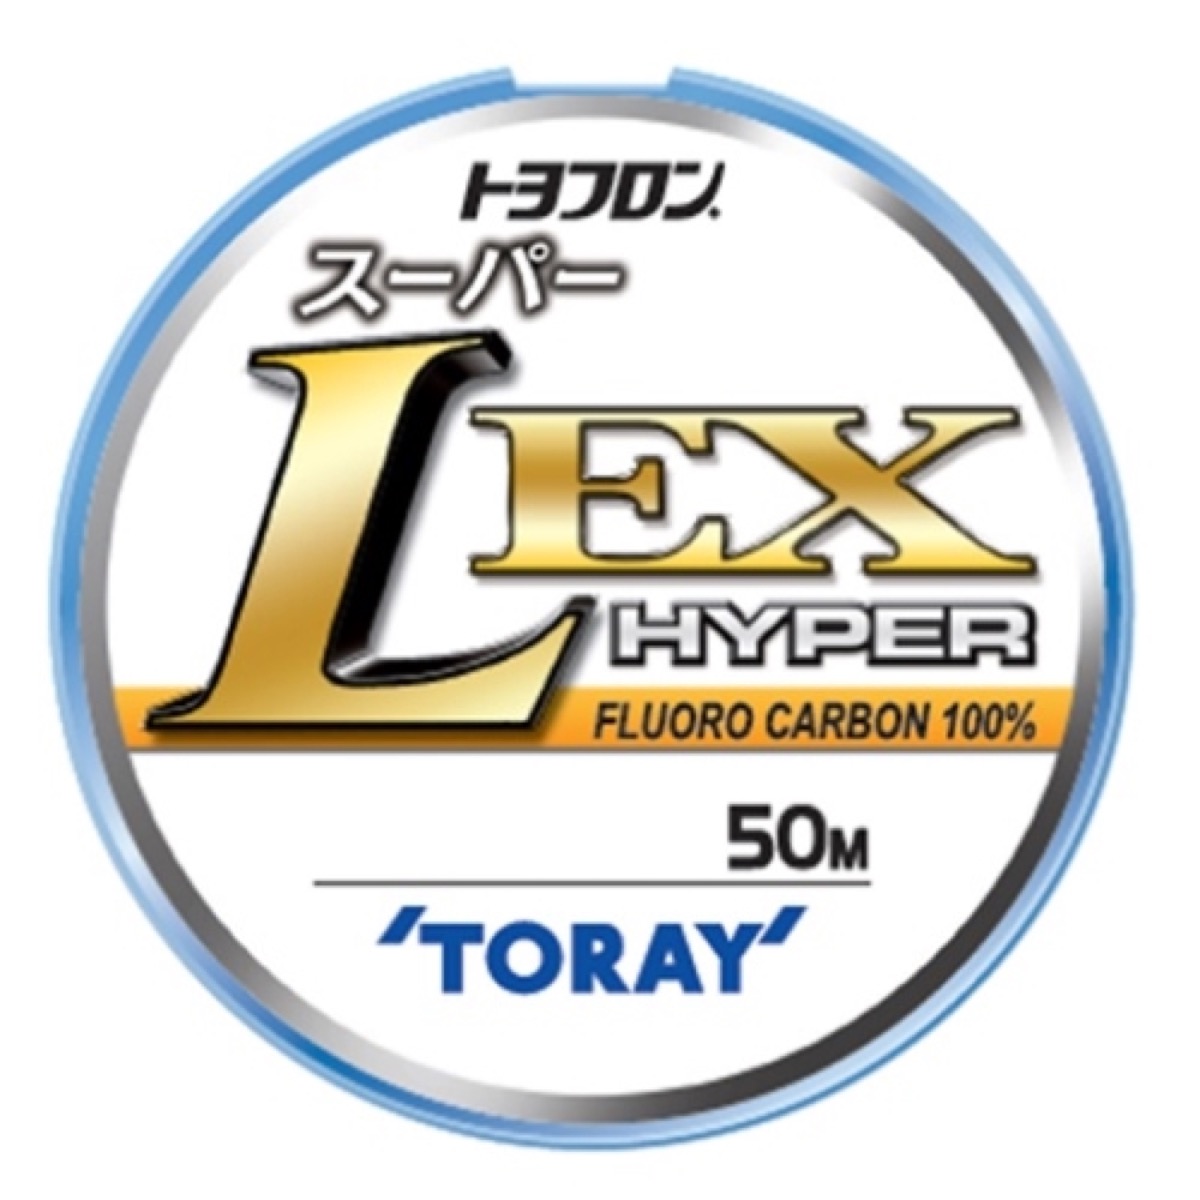 東レ(TORAY) トヨフロン スーパーL・EX ハイパー 50m 3号 ナチュラル ネコポス(メール便)対象商品